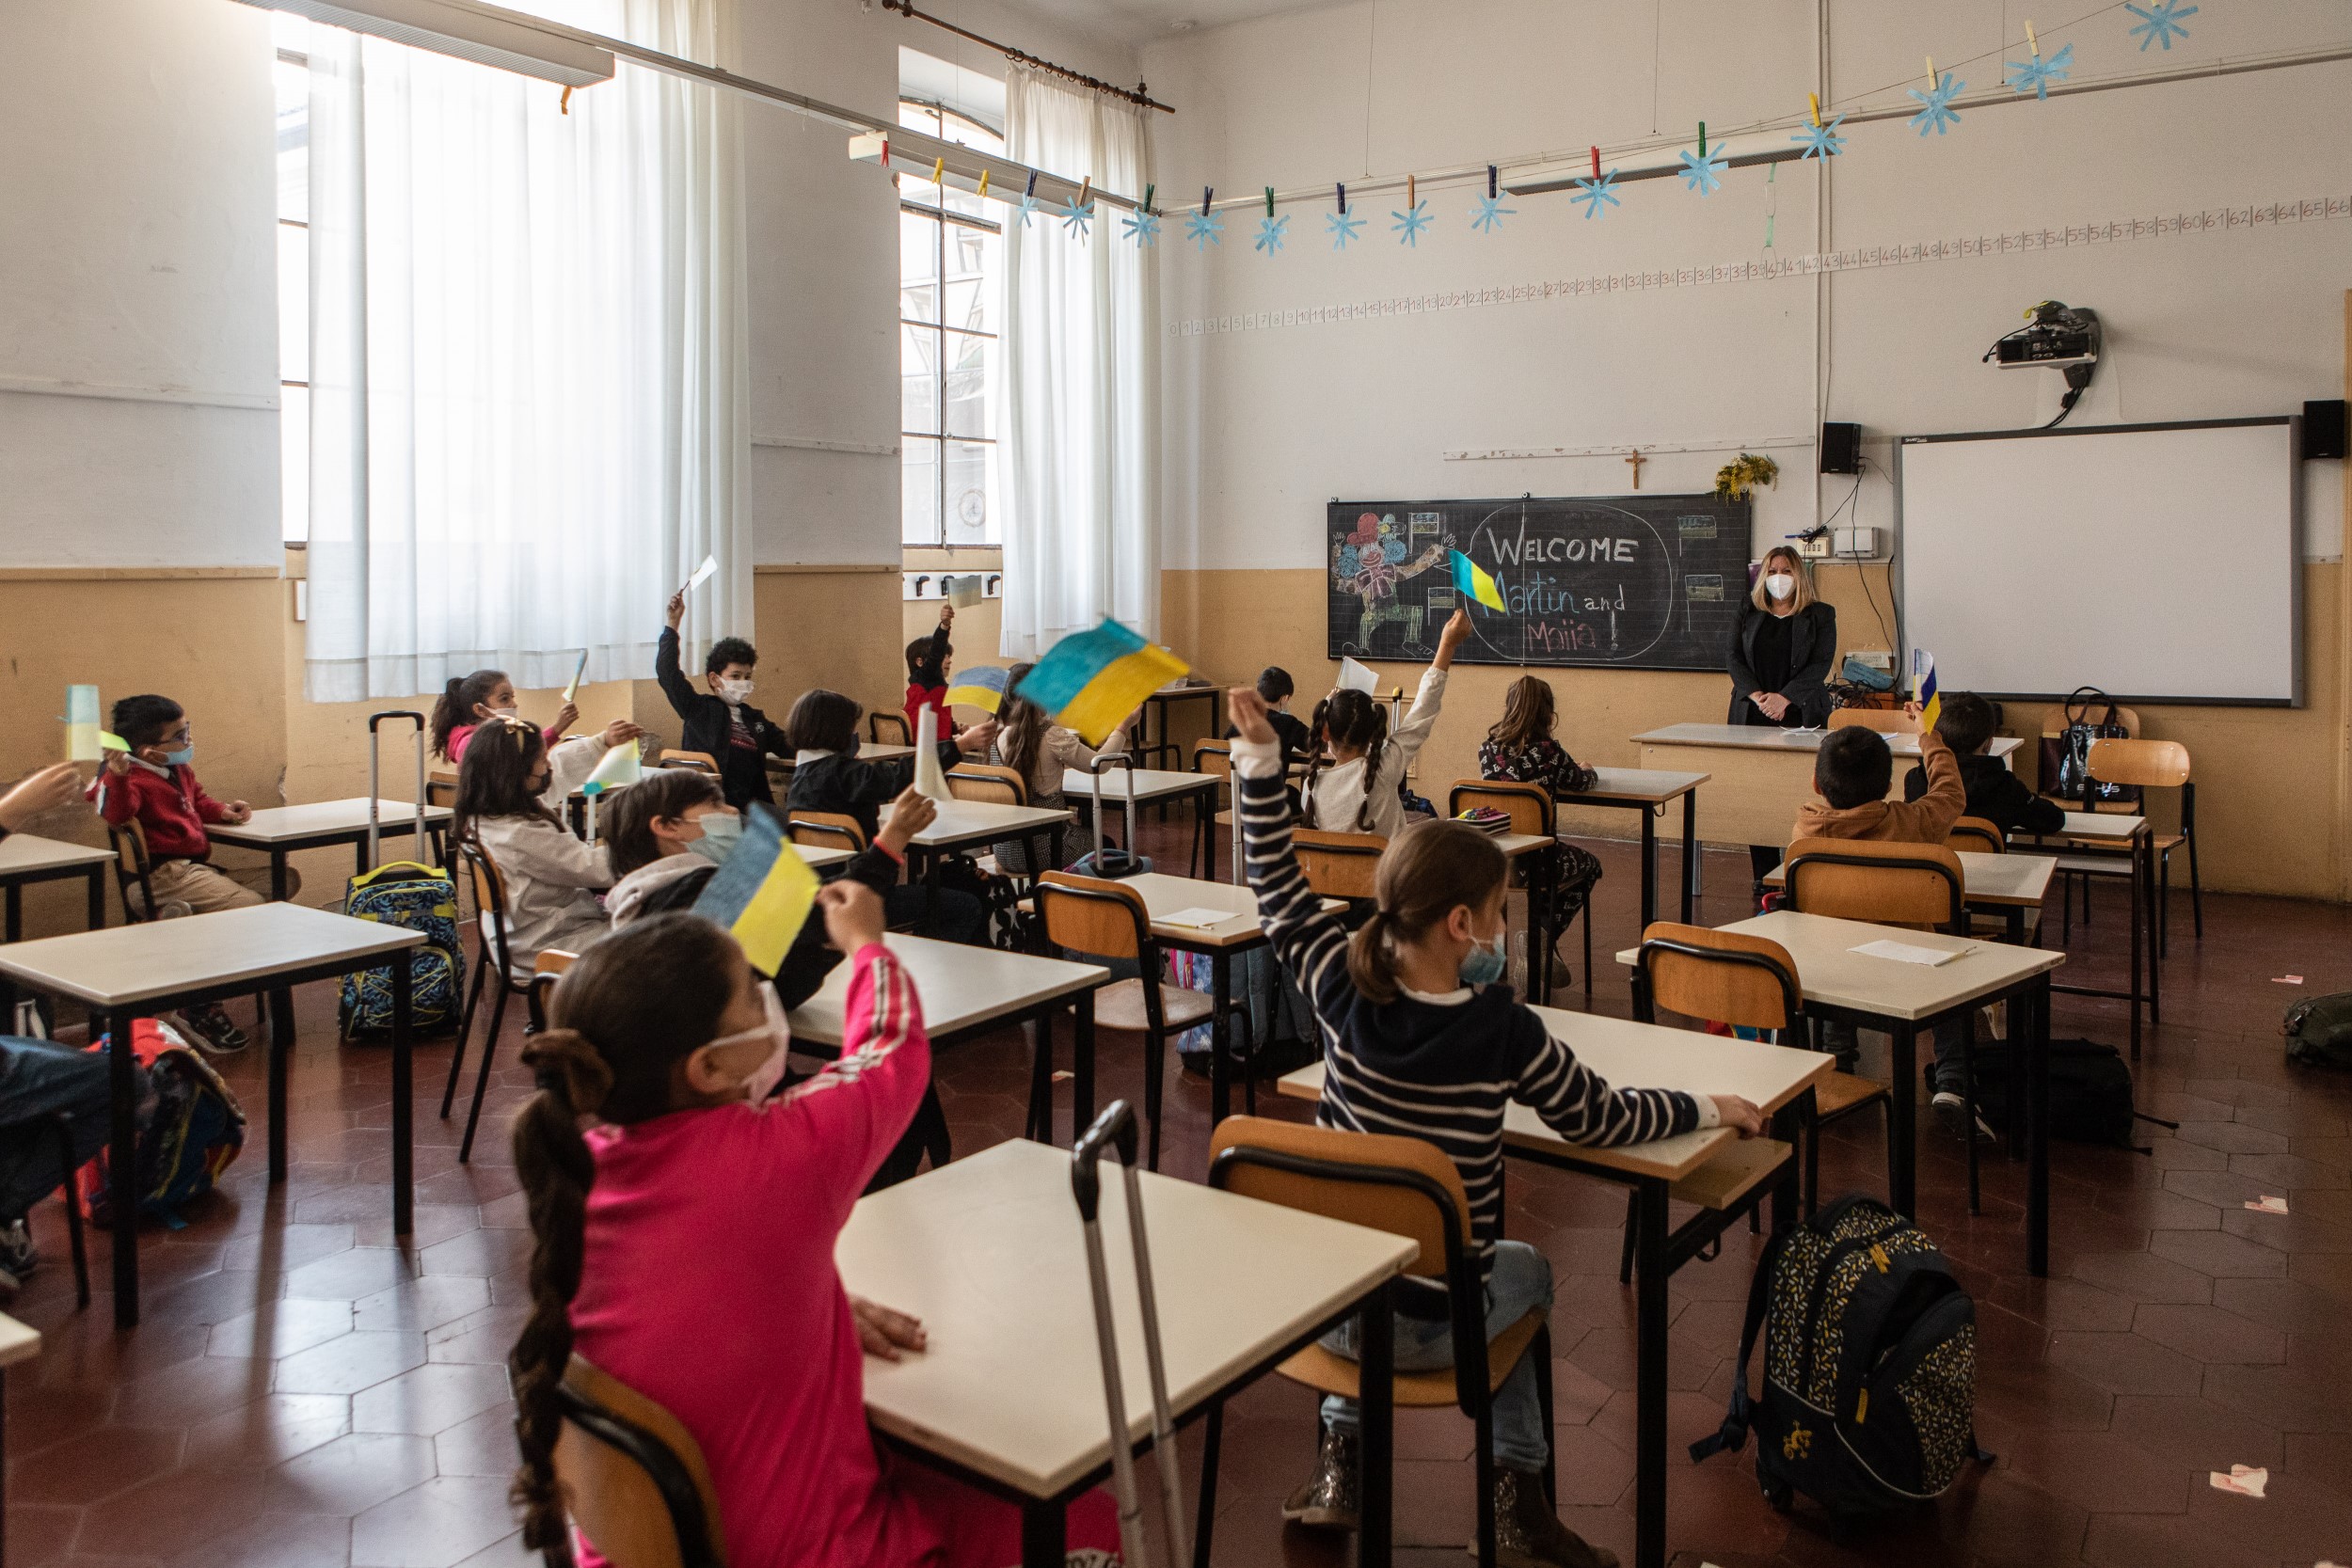 Ένταξη Ουκρανών μαθητών στο εκπαιδευτικό σύστημα, παροχή μαθημάτων ελληνικής γλώσσας